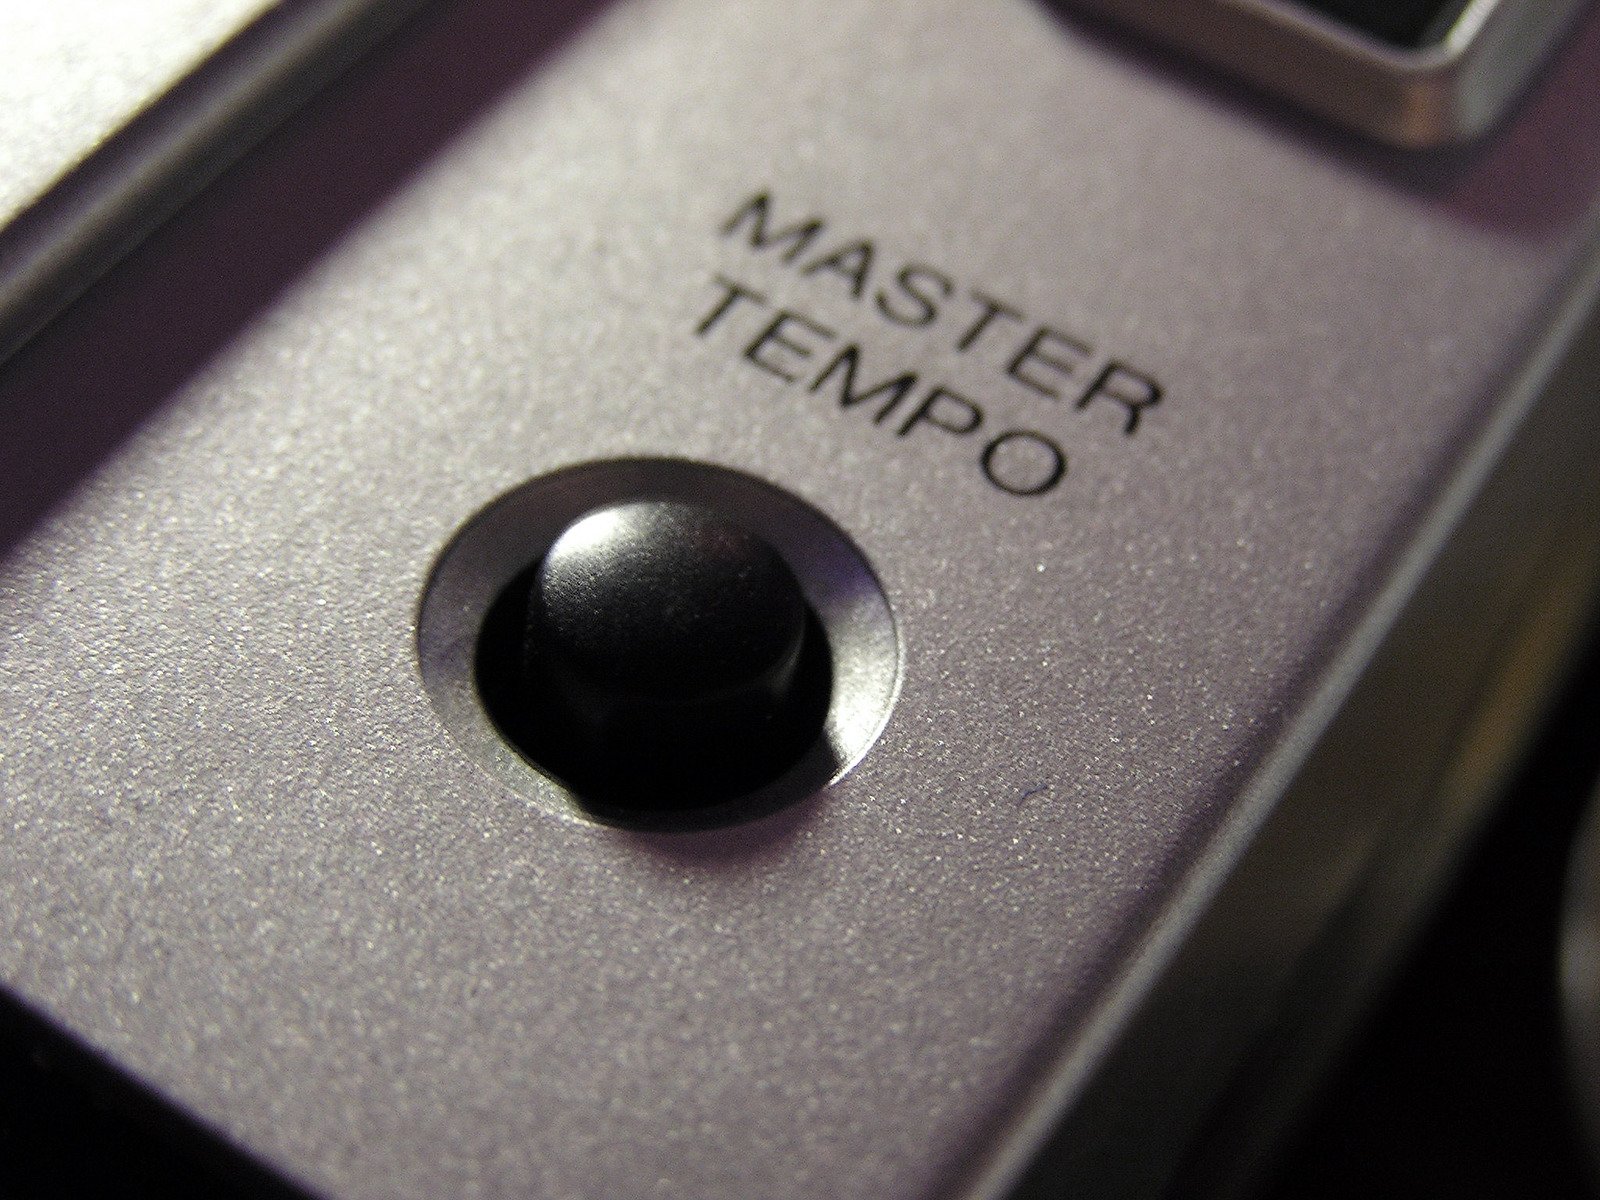 The master tempo